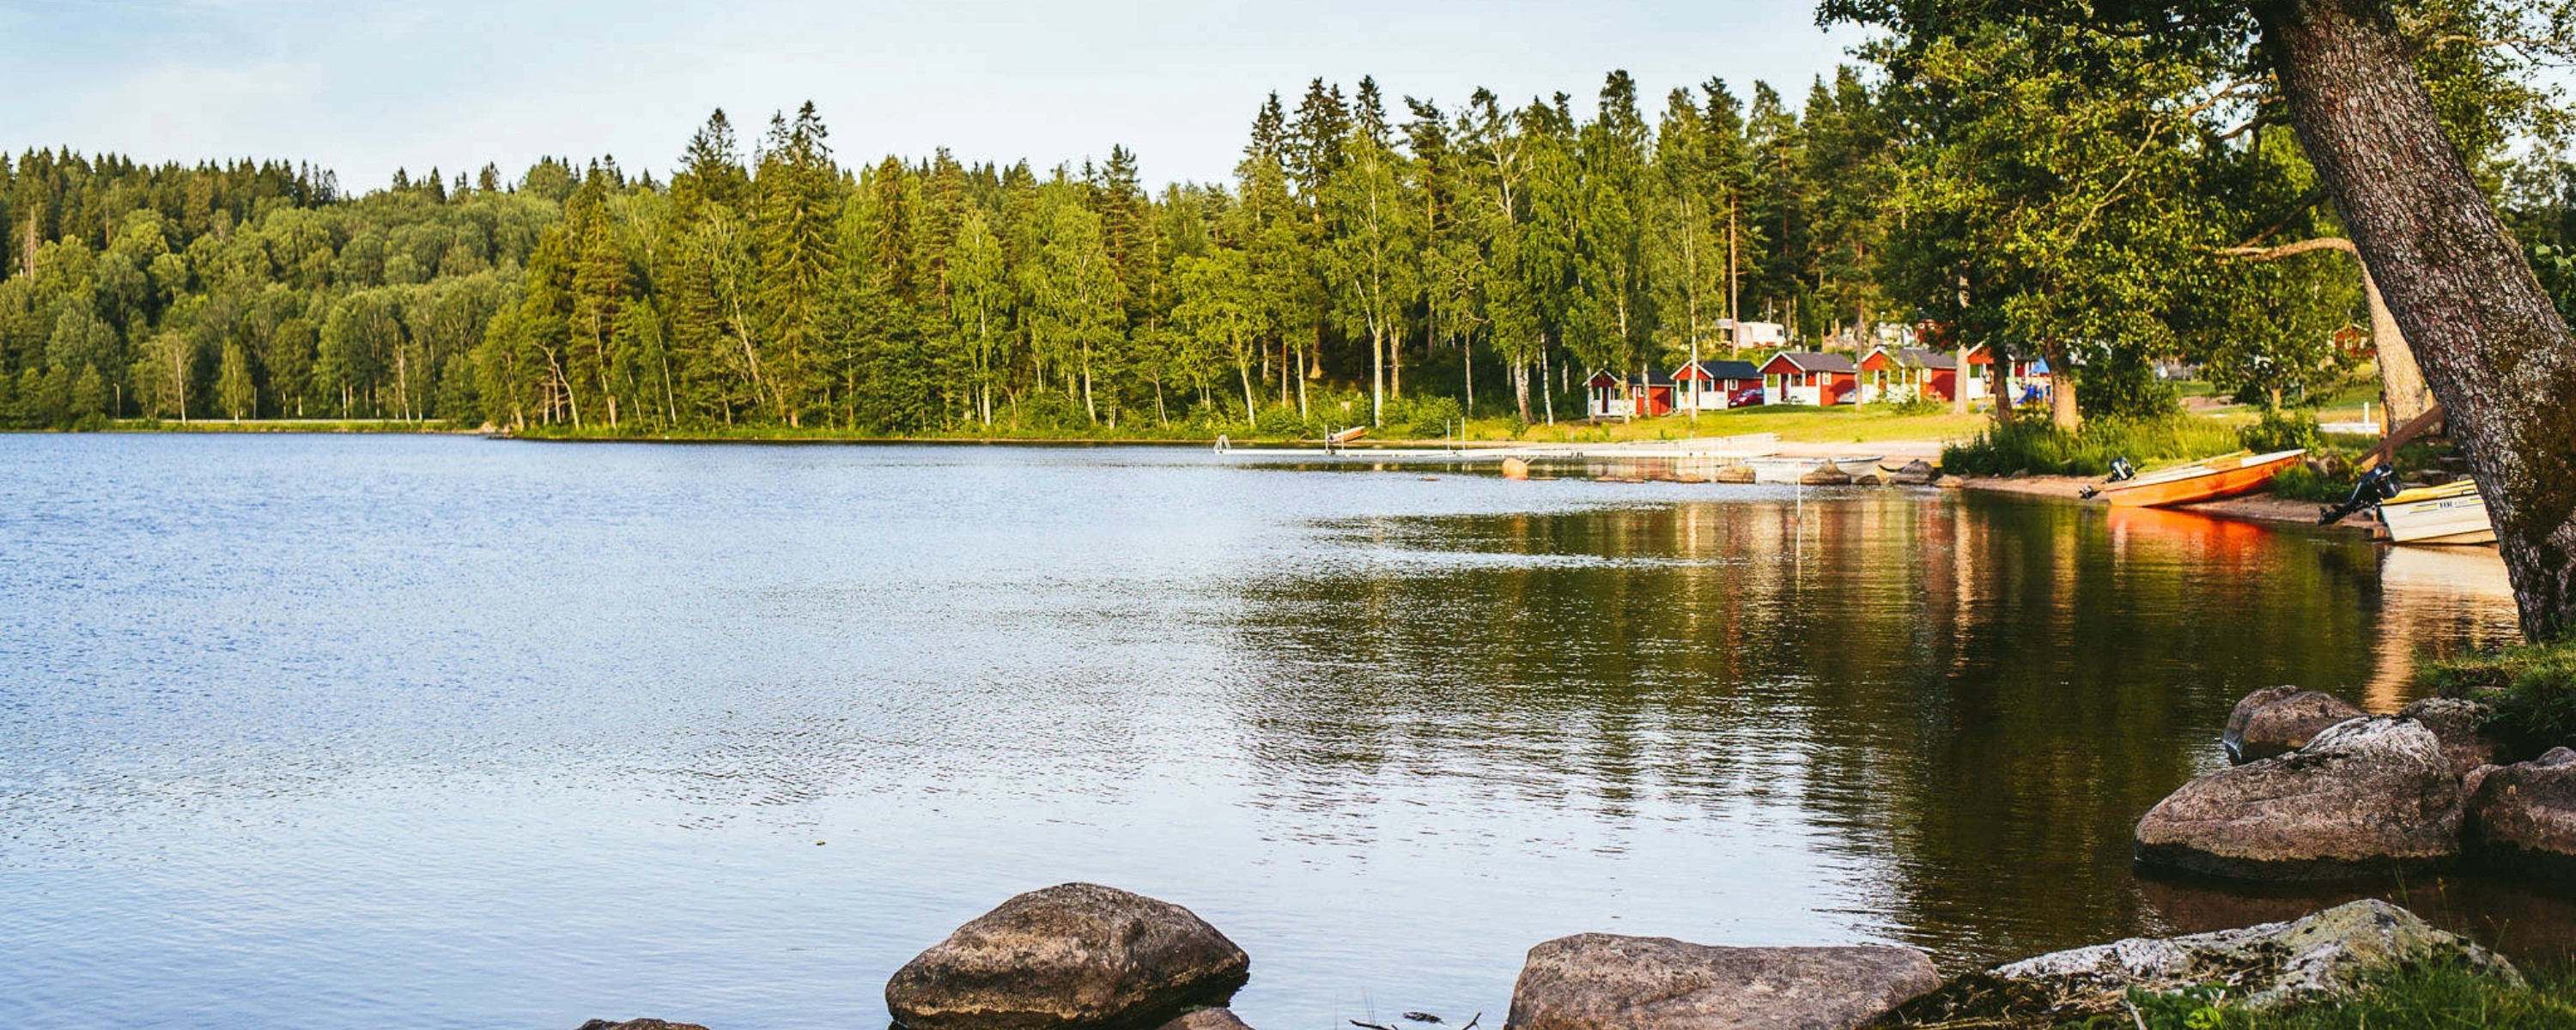 Stranden på Degernäs camping i sommarsolen.